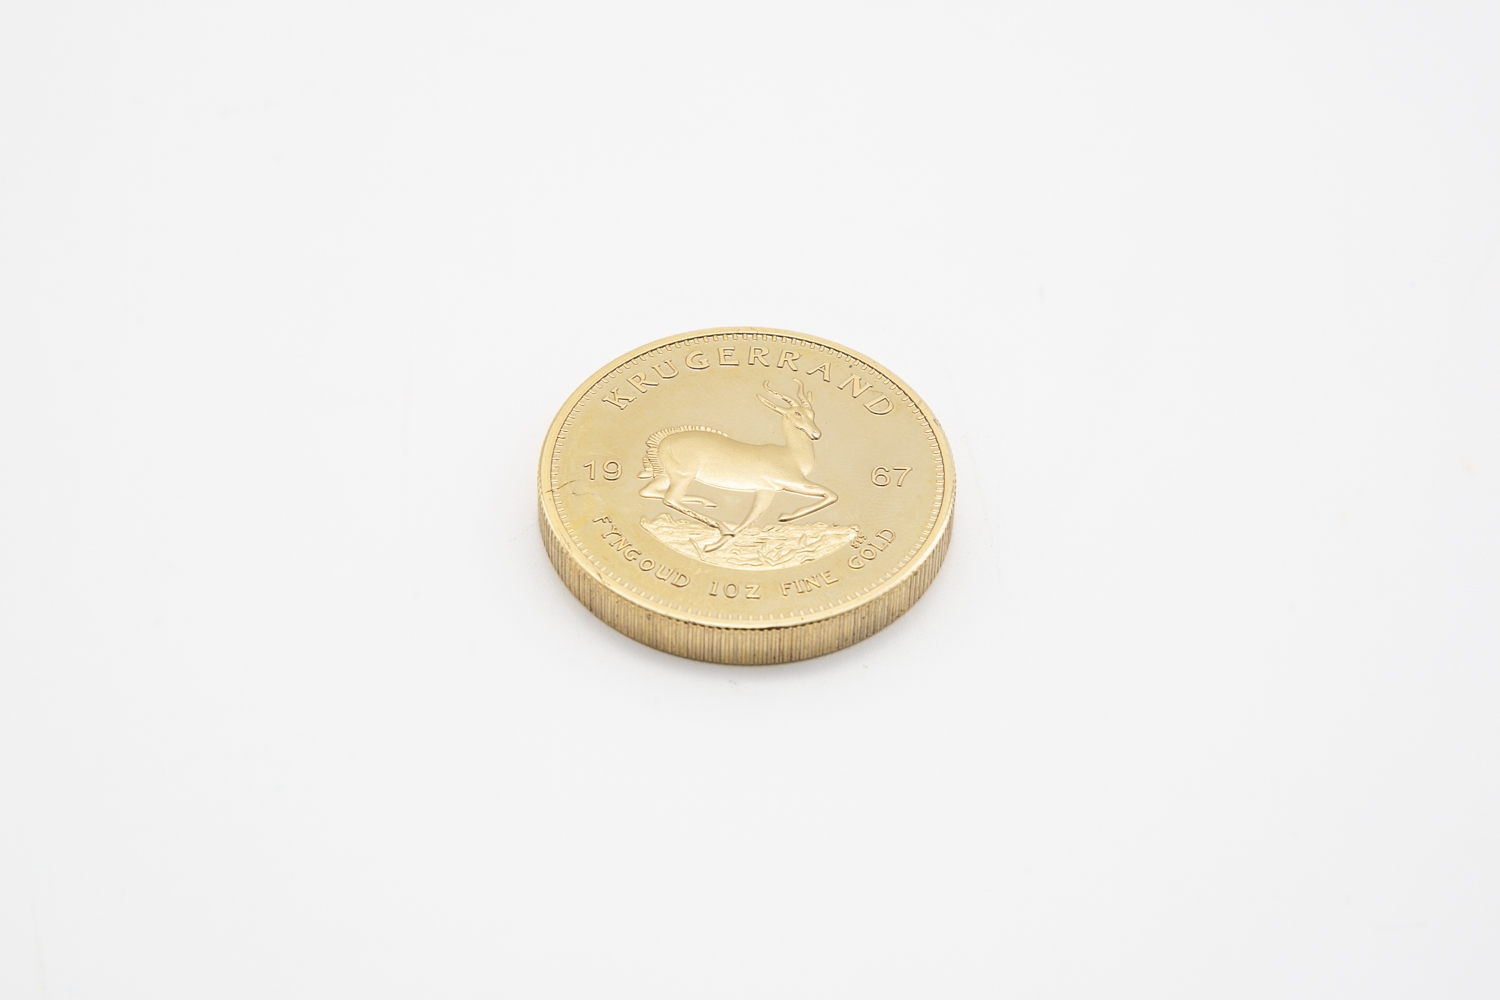 17 - Pièce en or jaune Krugerrand datée 1967. Adjugé 1200€